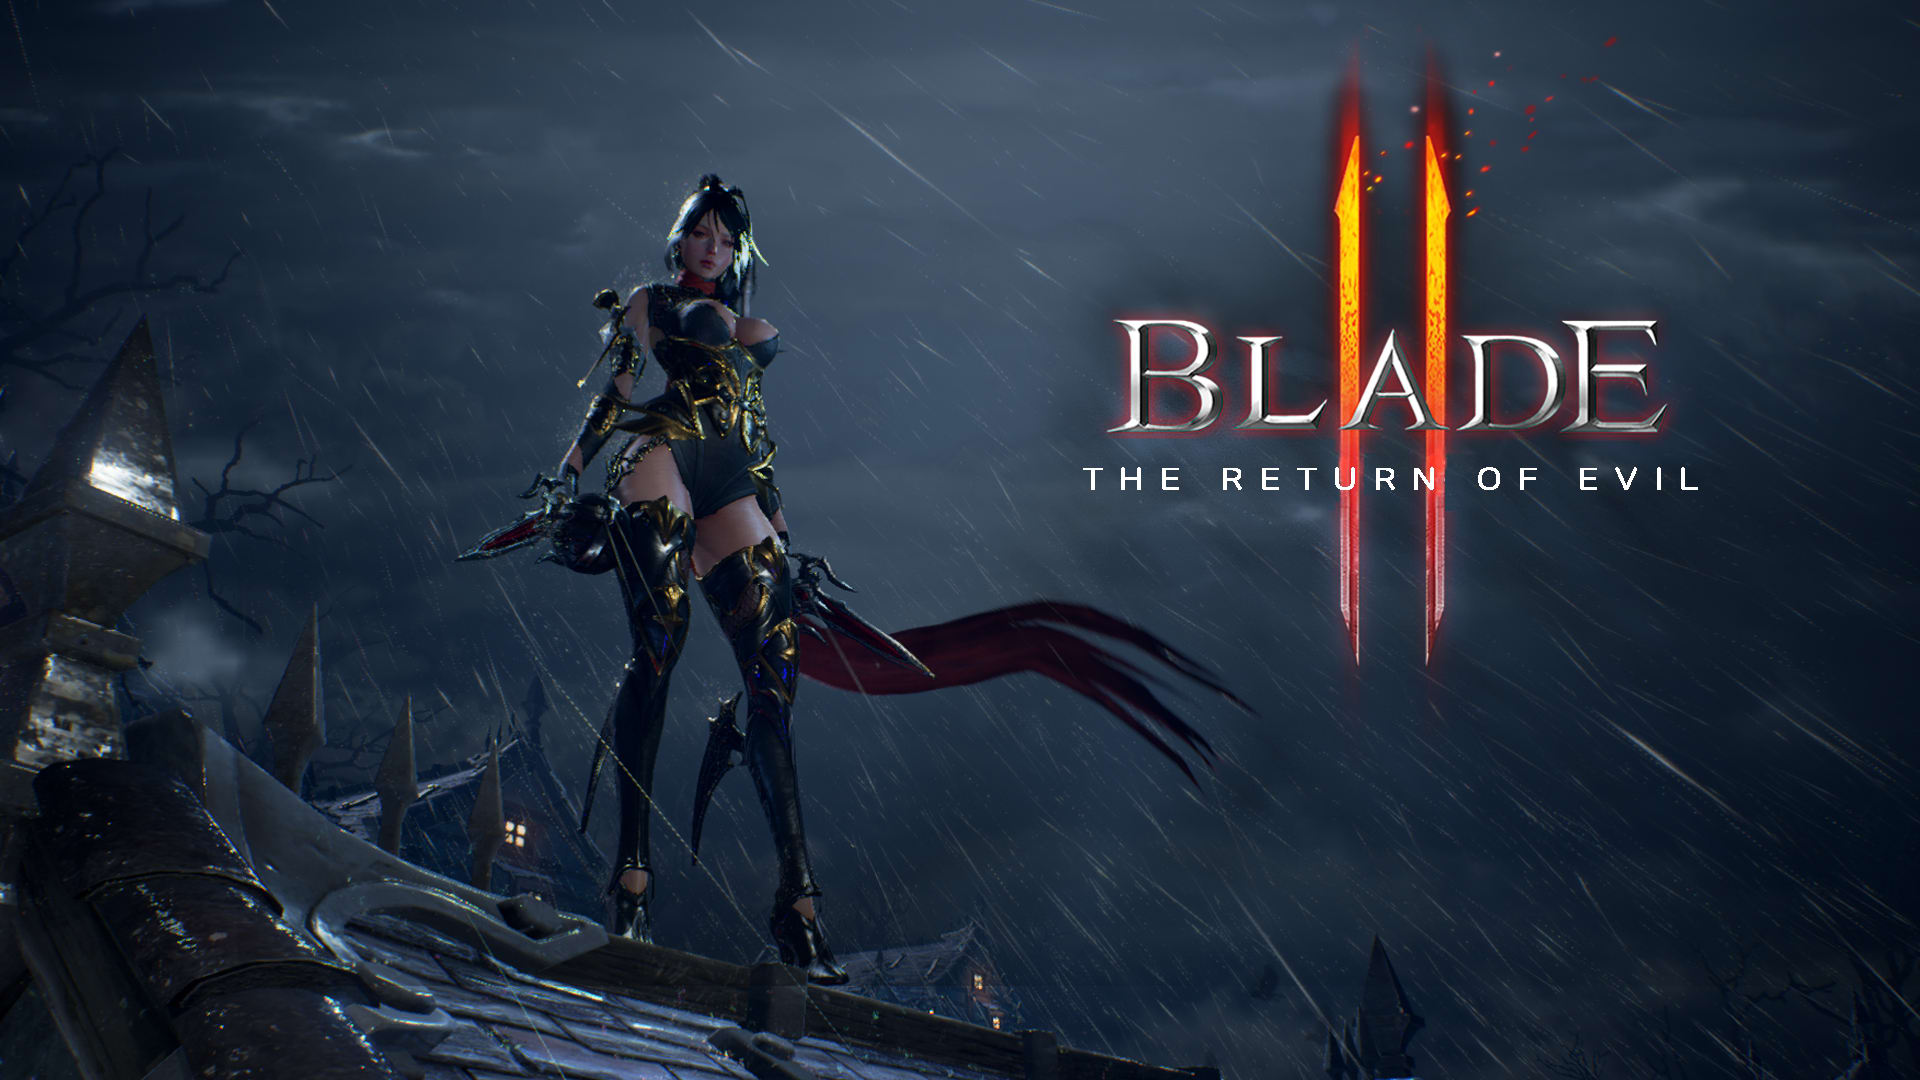 Blade II - The Return Of Evil